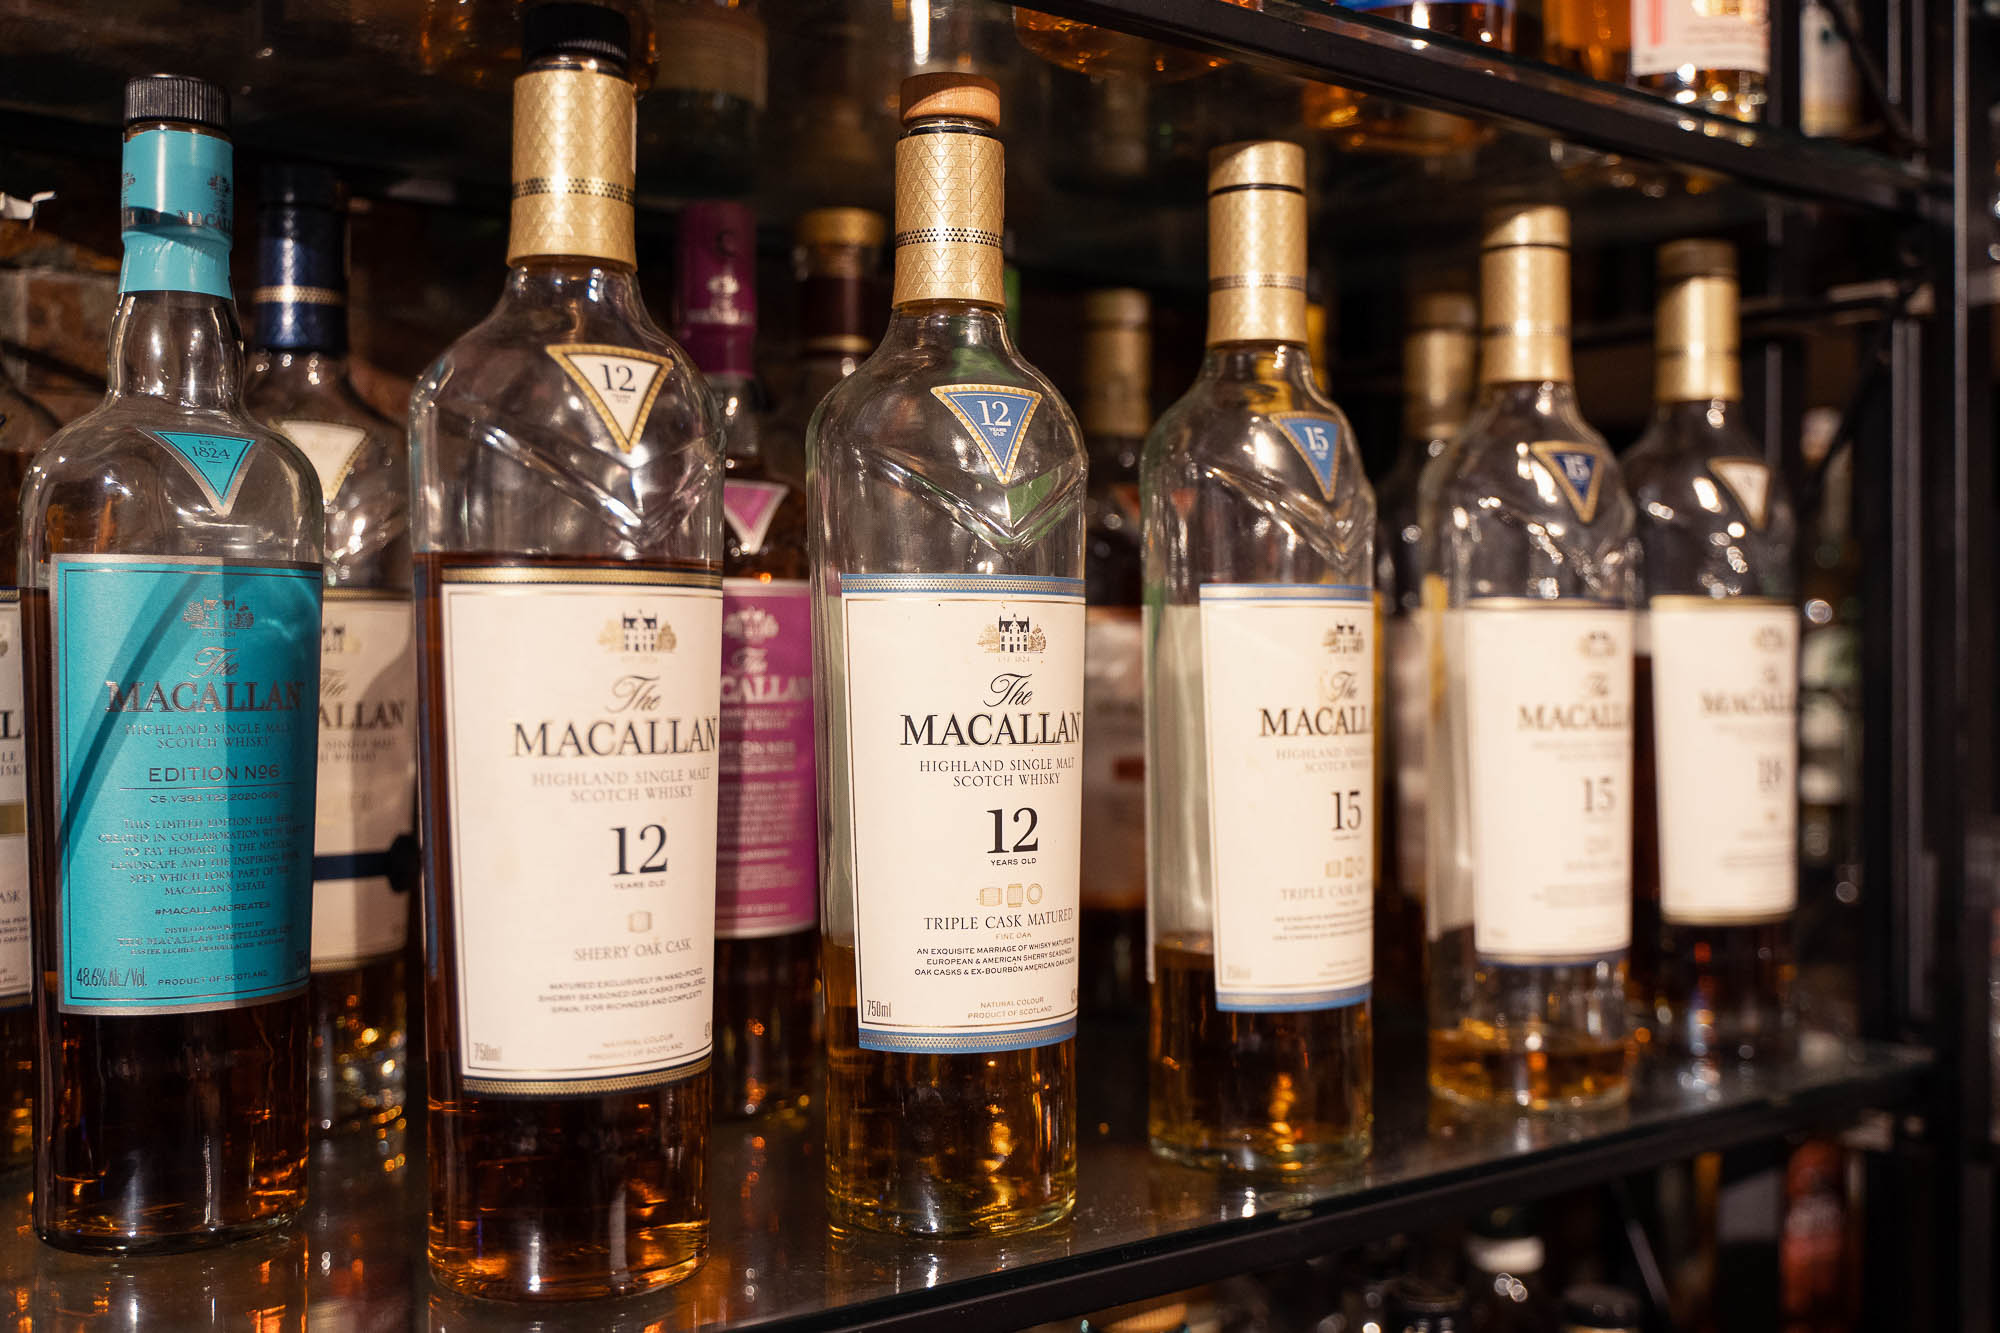 Interior, Scotch whisky bottles on a shelf